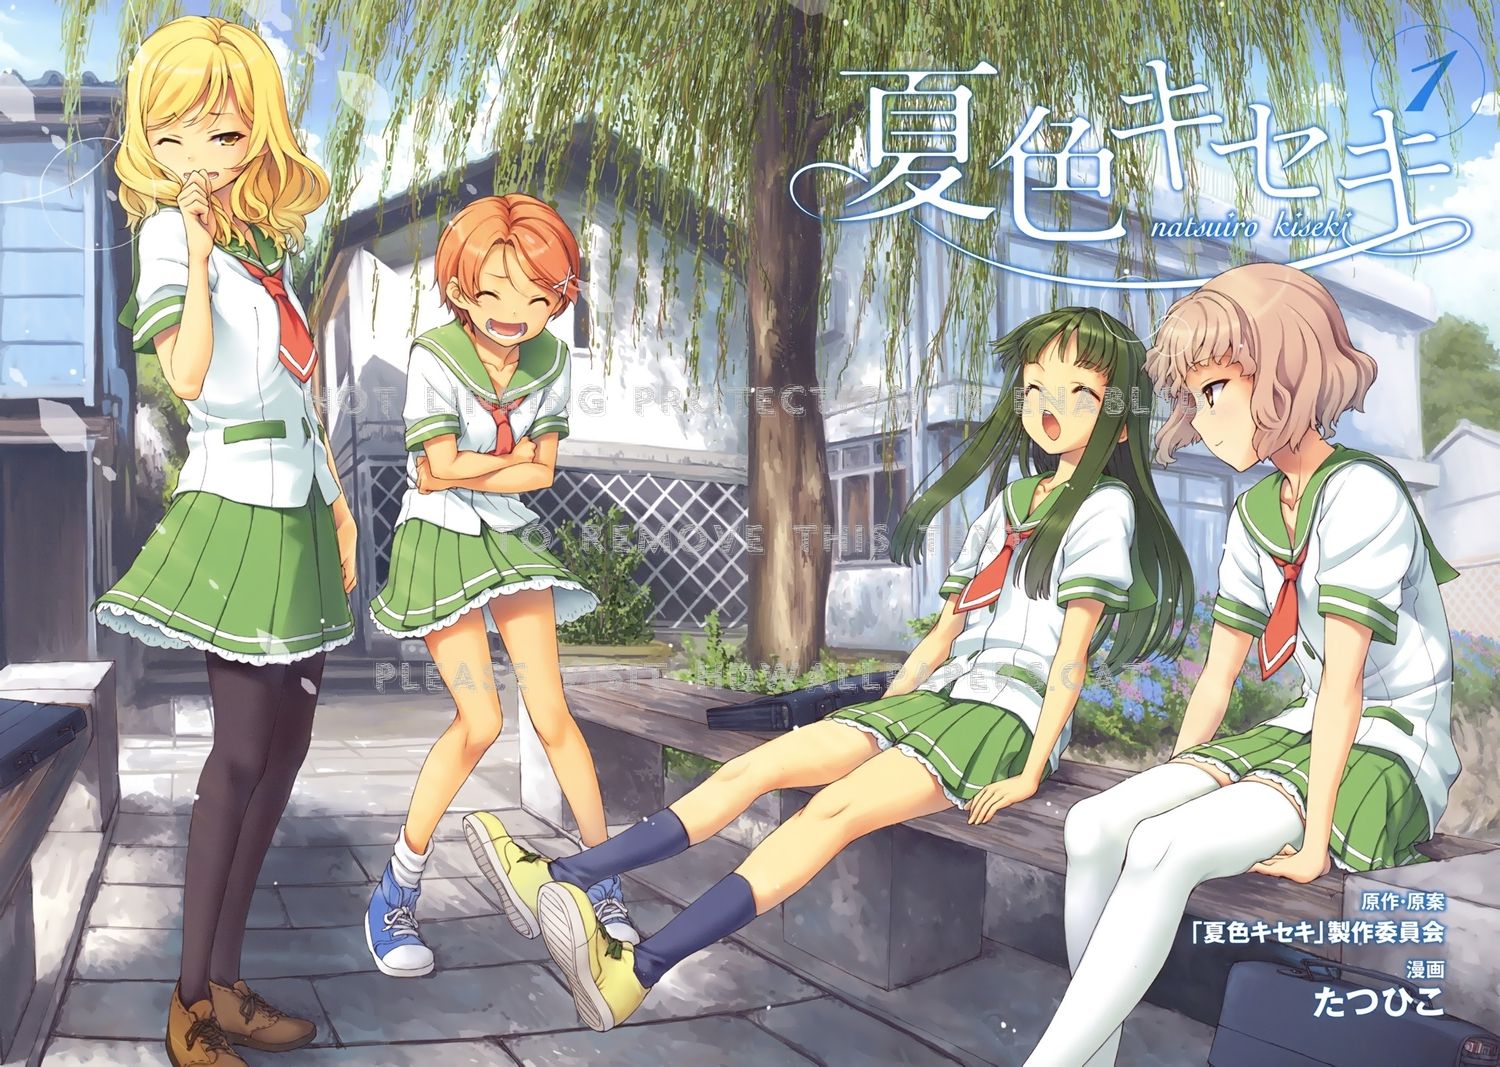 Anime manga girl stock vector. Illustration of hair - 138655513